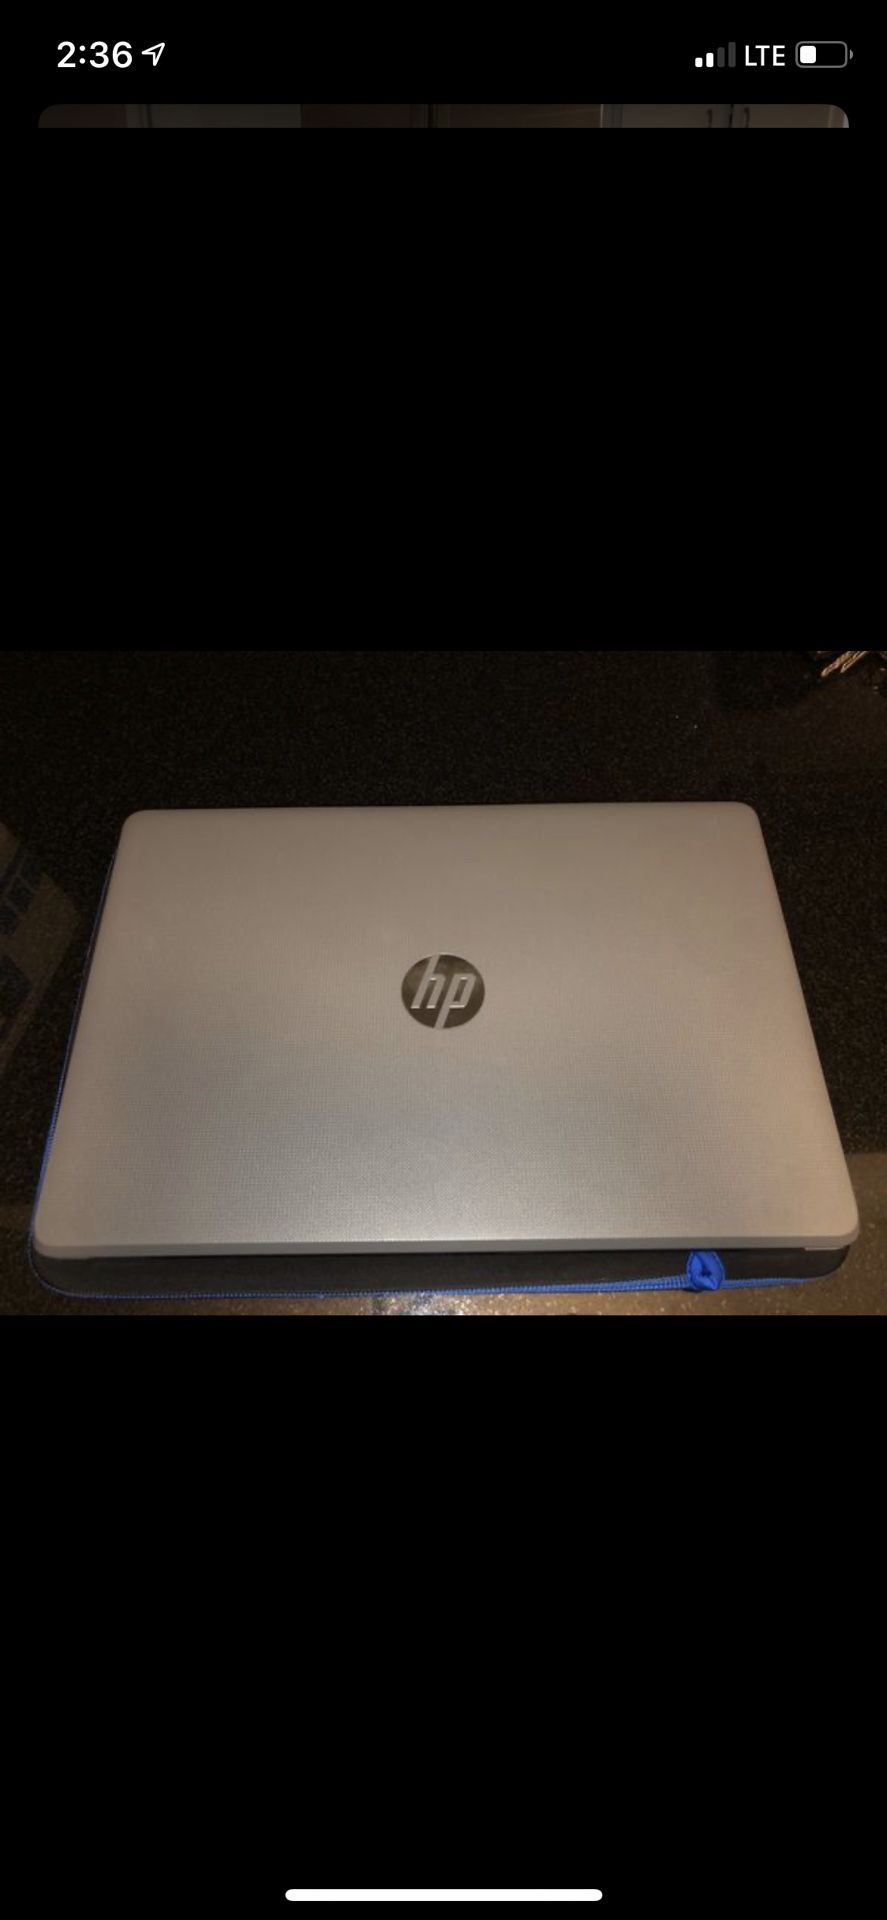 Notebook Laptop HP Touchscreen 15 inch